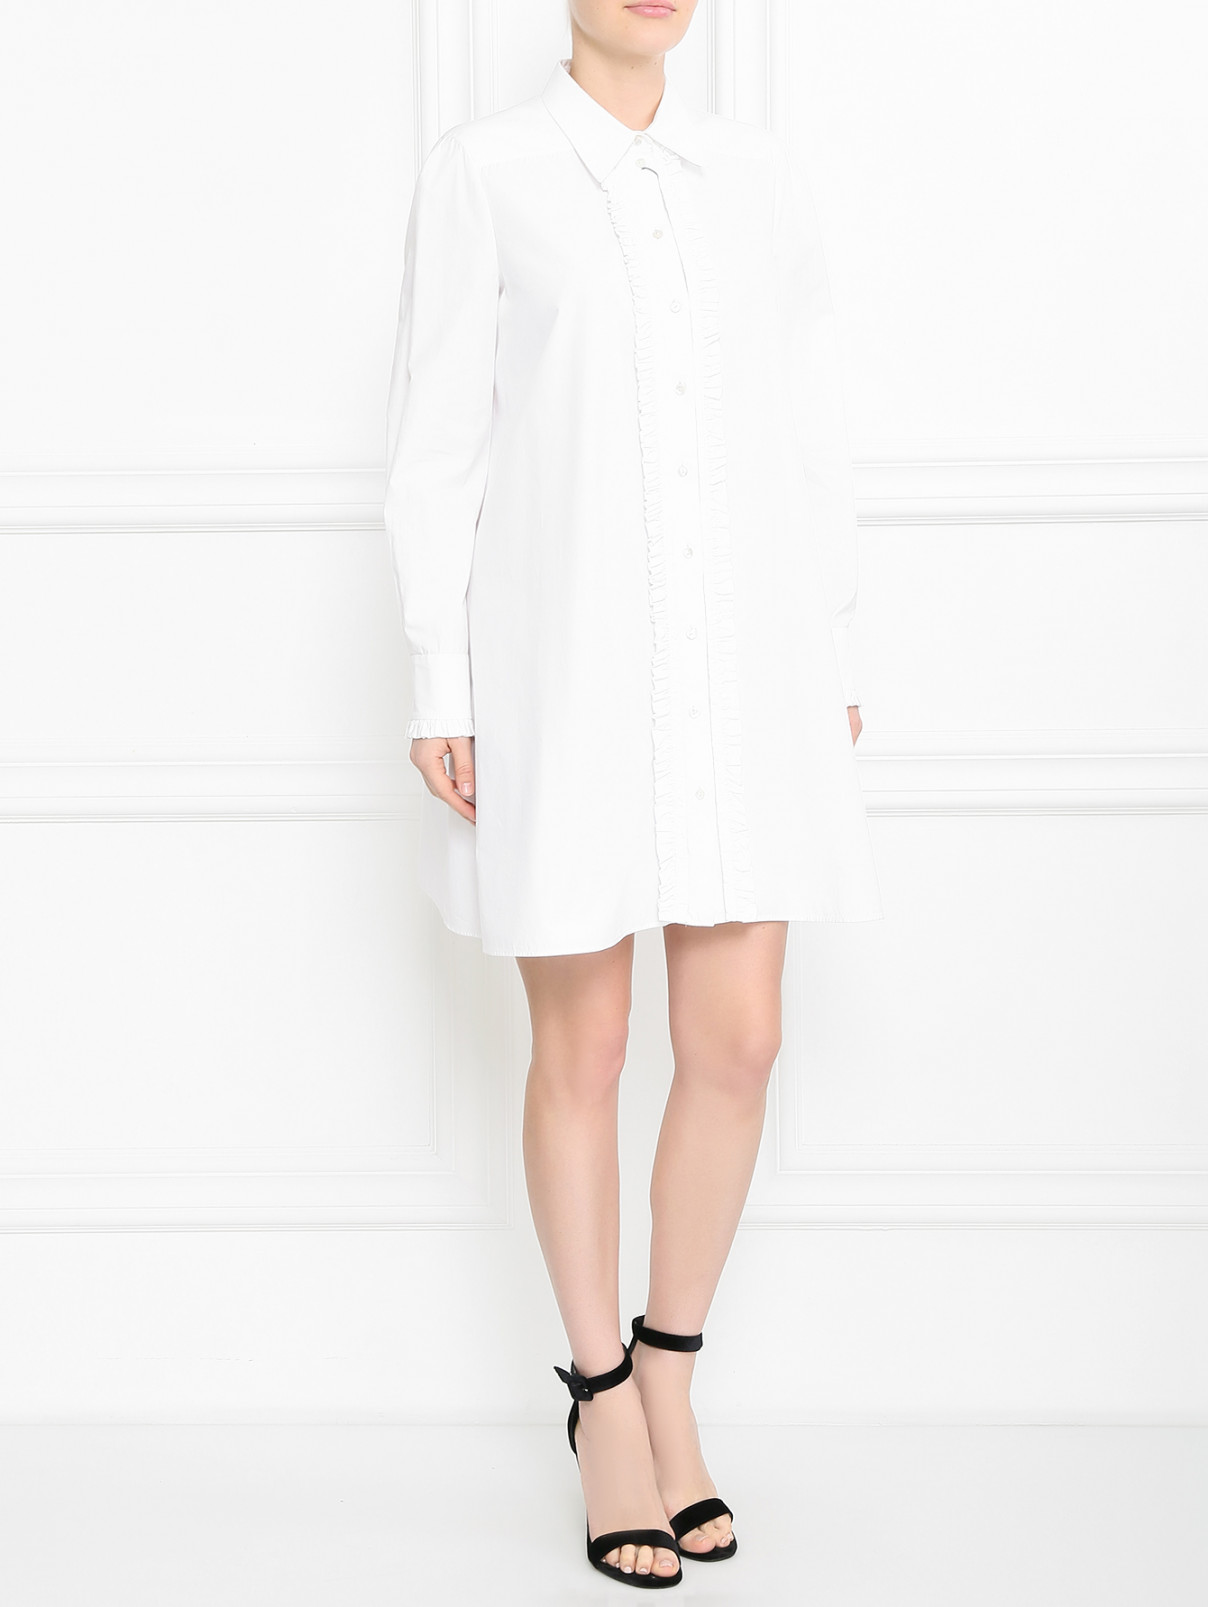 Платье-рубашка из хлопка Antonio Marras  –  Модель Общий вид  – Цвет:  Белый